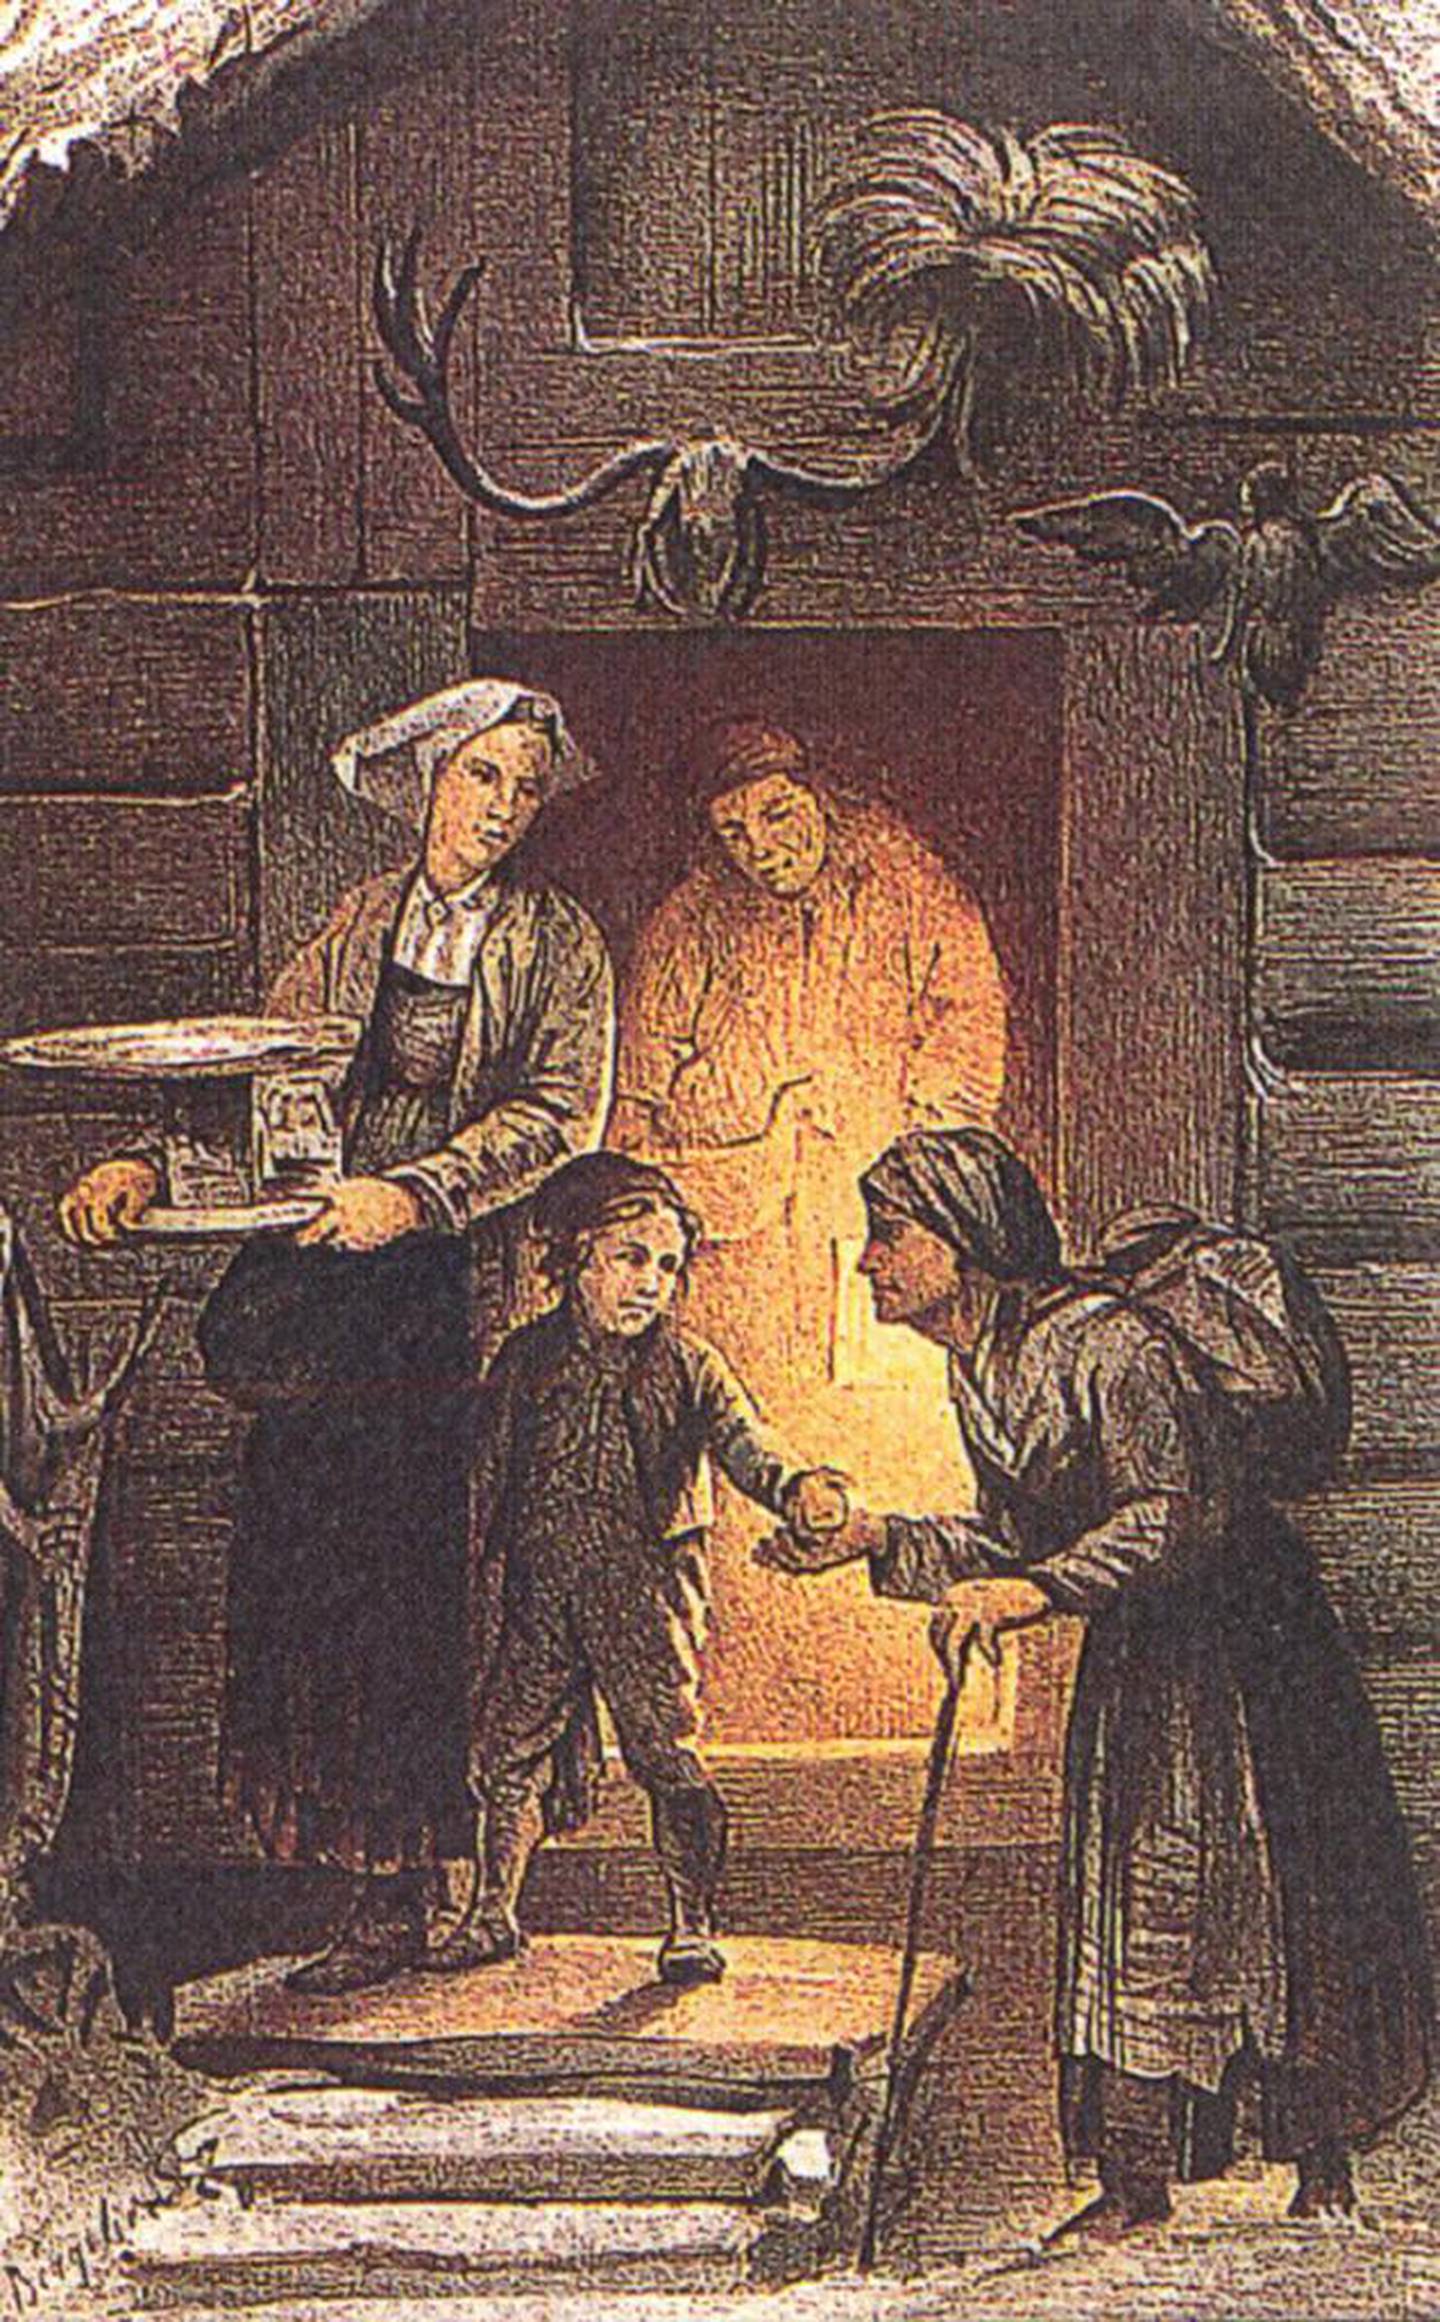 Fattig jul – farge­tegning av Knud Bergslien fra sent 1800-tall. Fattigfolk fikk noe ekstra godt i hånden, når de kom på døren i julen. Lot man være å gi, bar man julen ut og tok velsignelsen fra huset.